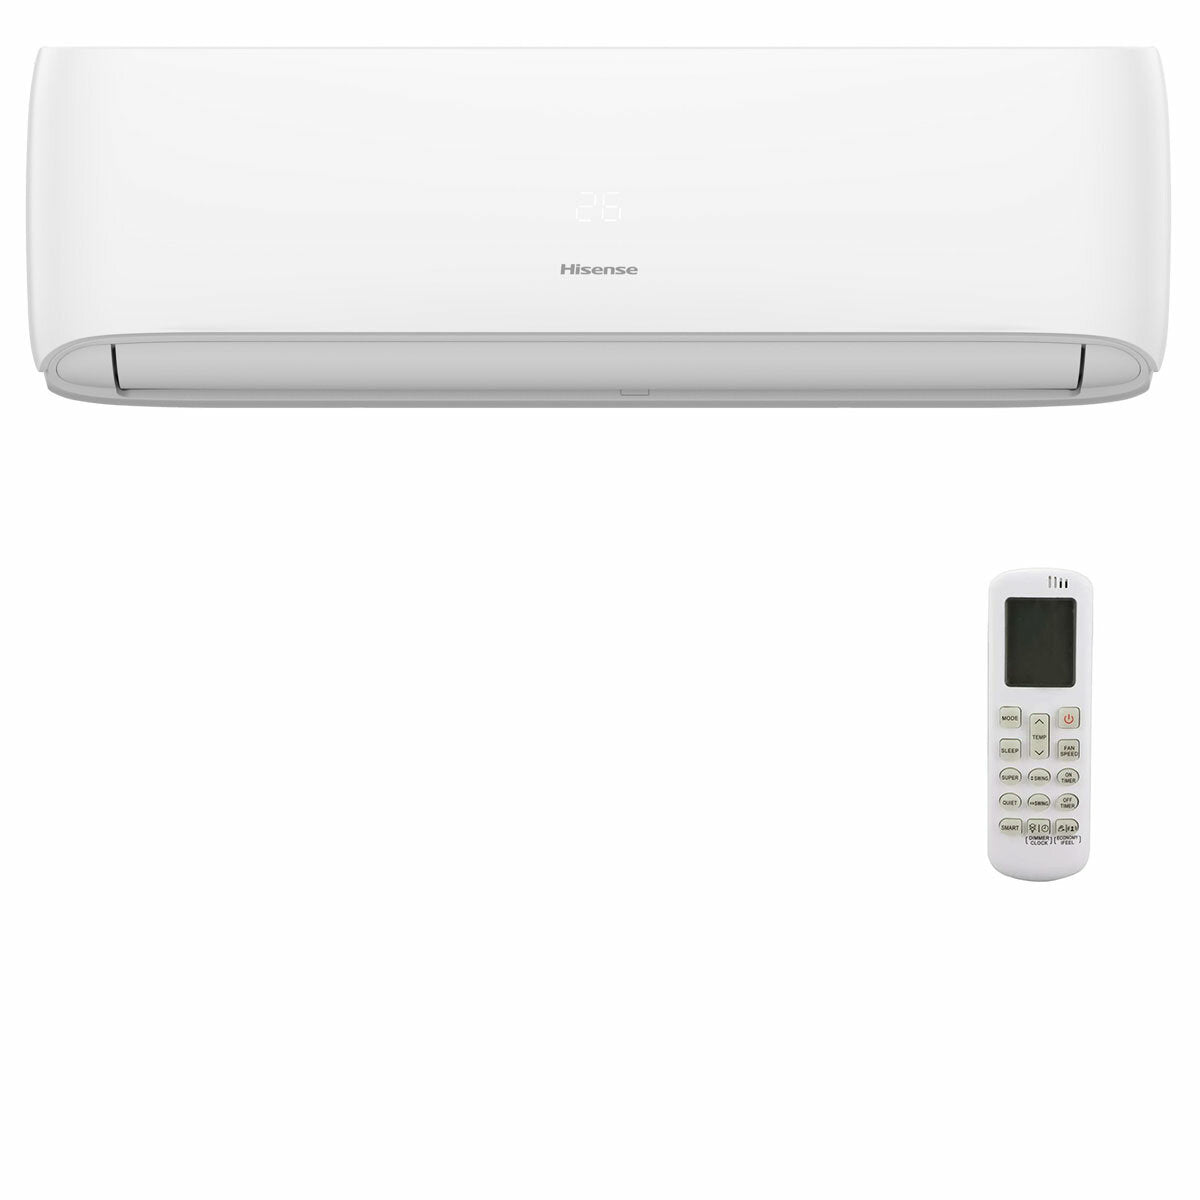 Hisense Hi-Comfort quadri split air conditioner 7000 + 9000 + 9000 + 12000 BTU inverter A++ wifi outdoor unit 8 kW